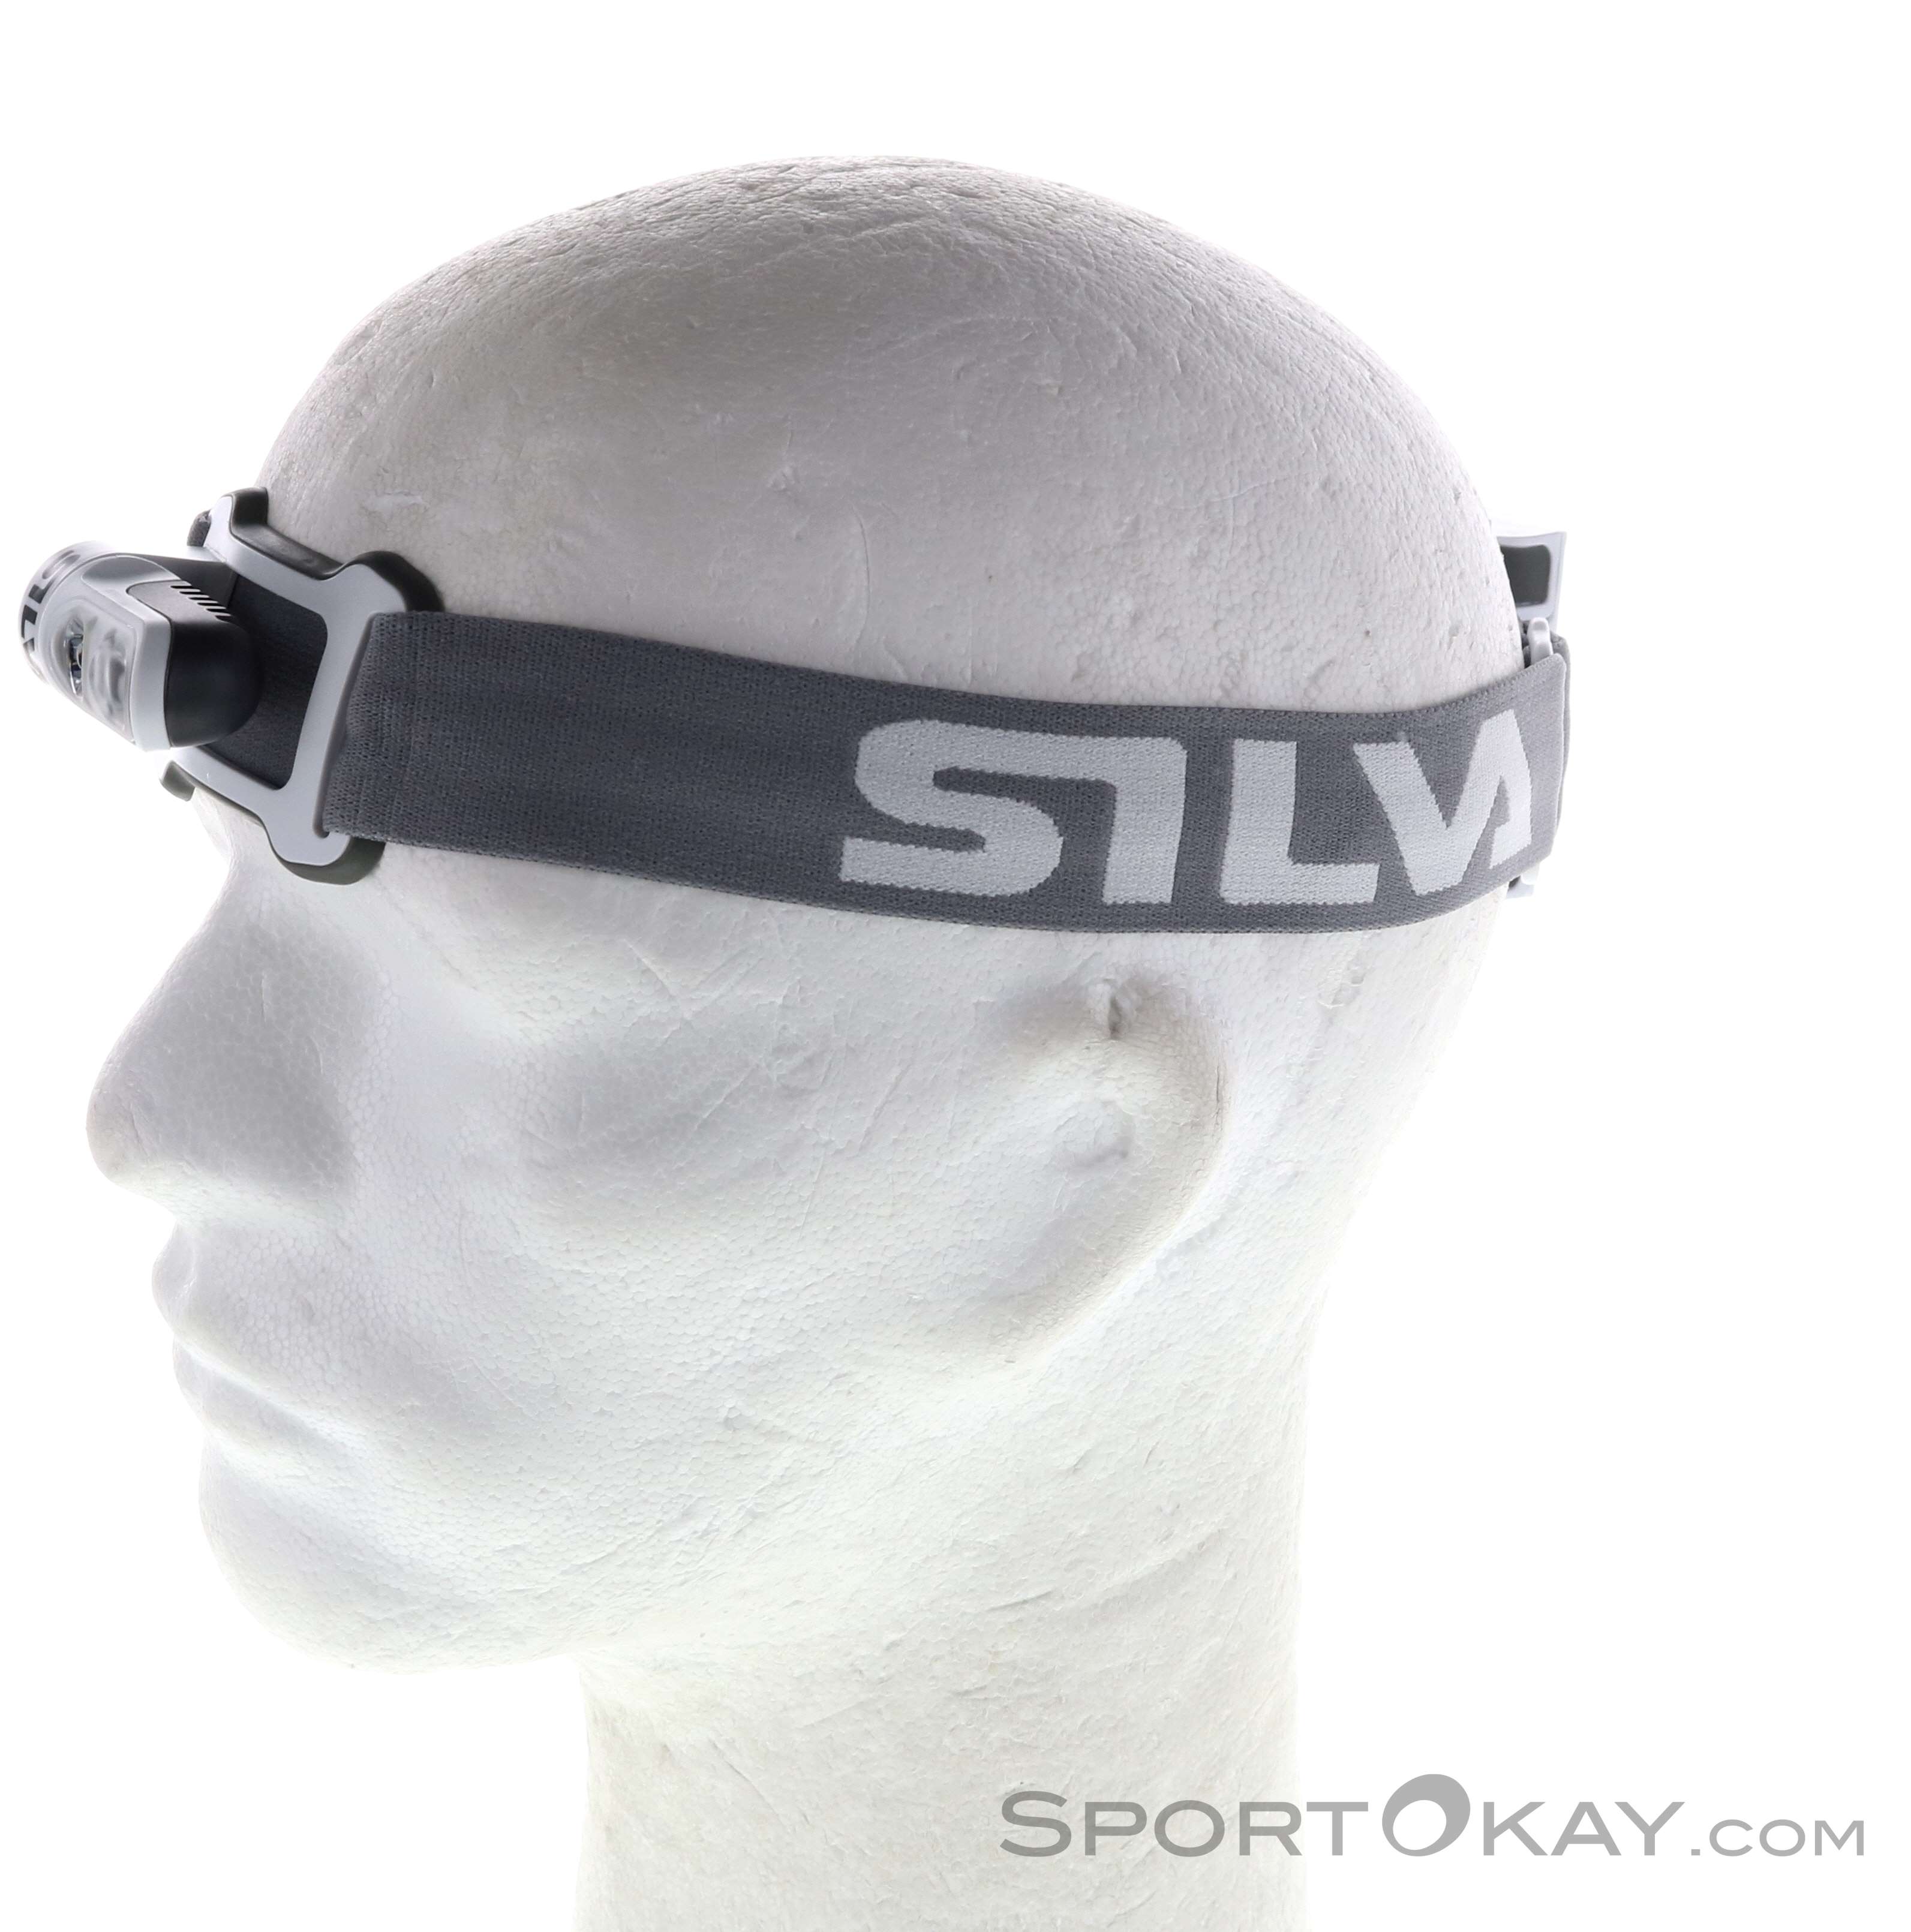 Silva Trail Runner 350 lm Lampe frontale - Lampes frontales - Accessoires  de randonnée - Randonnées à ski - Tout